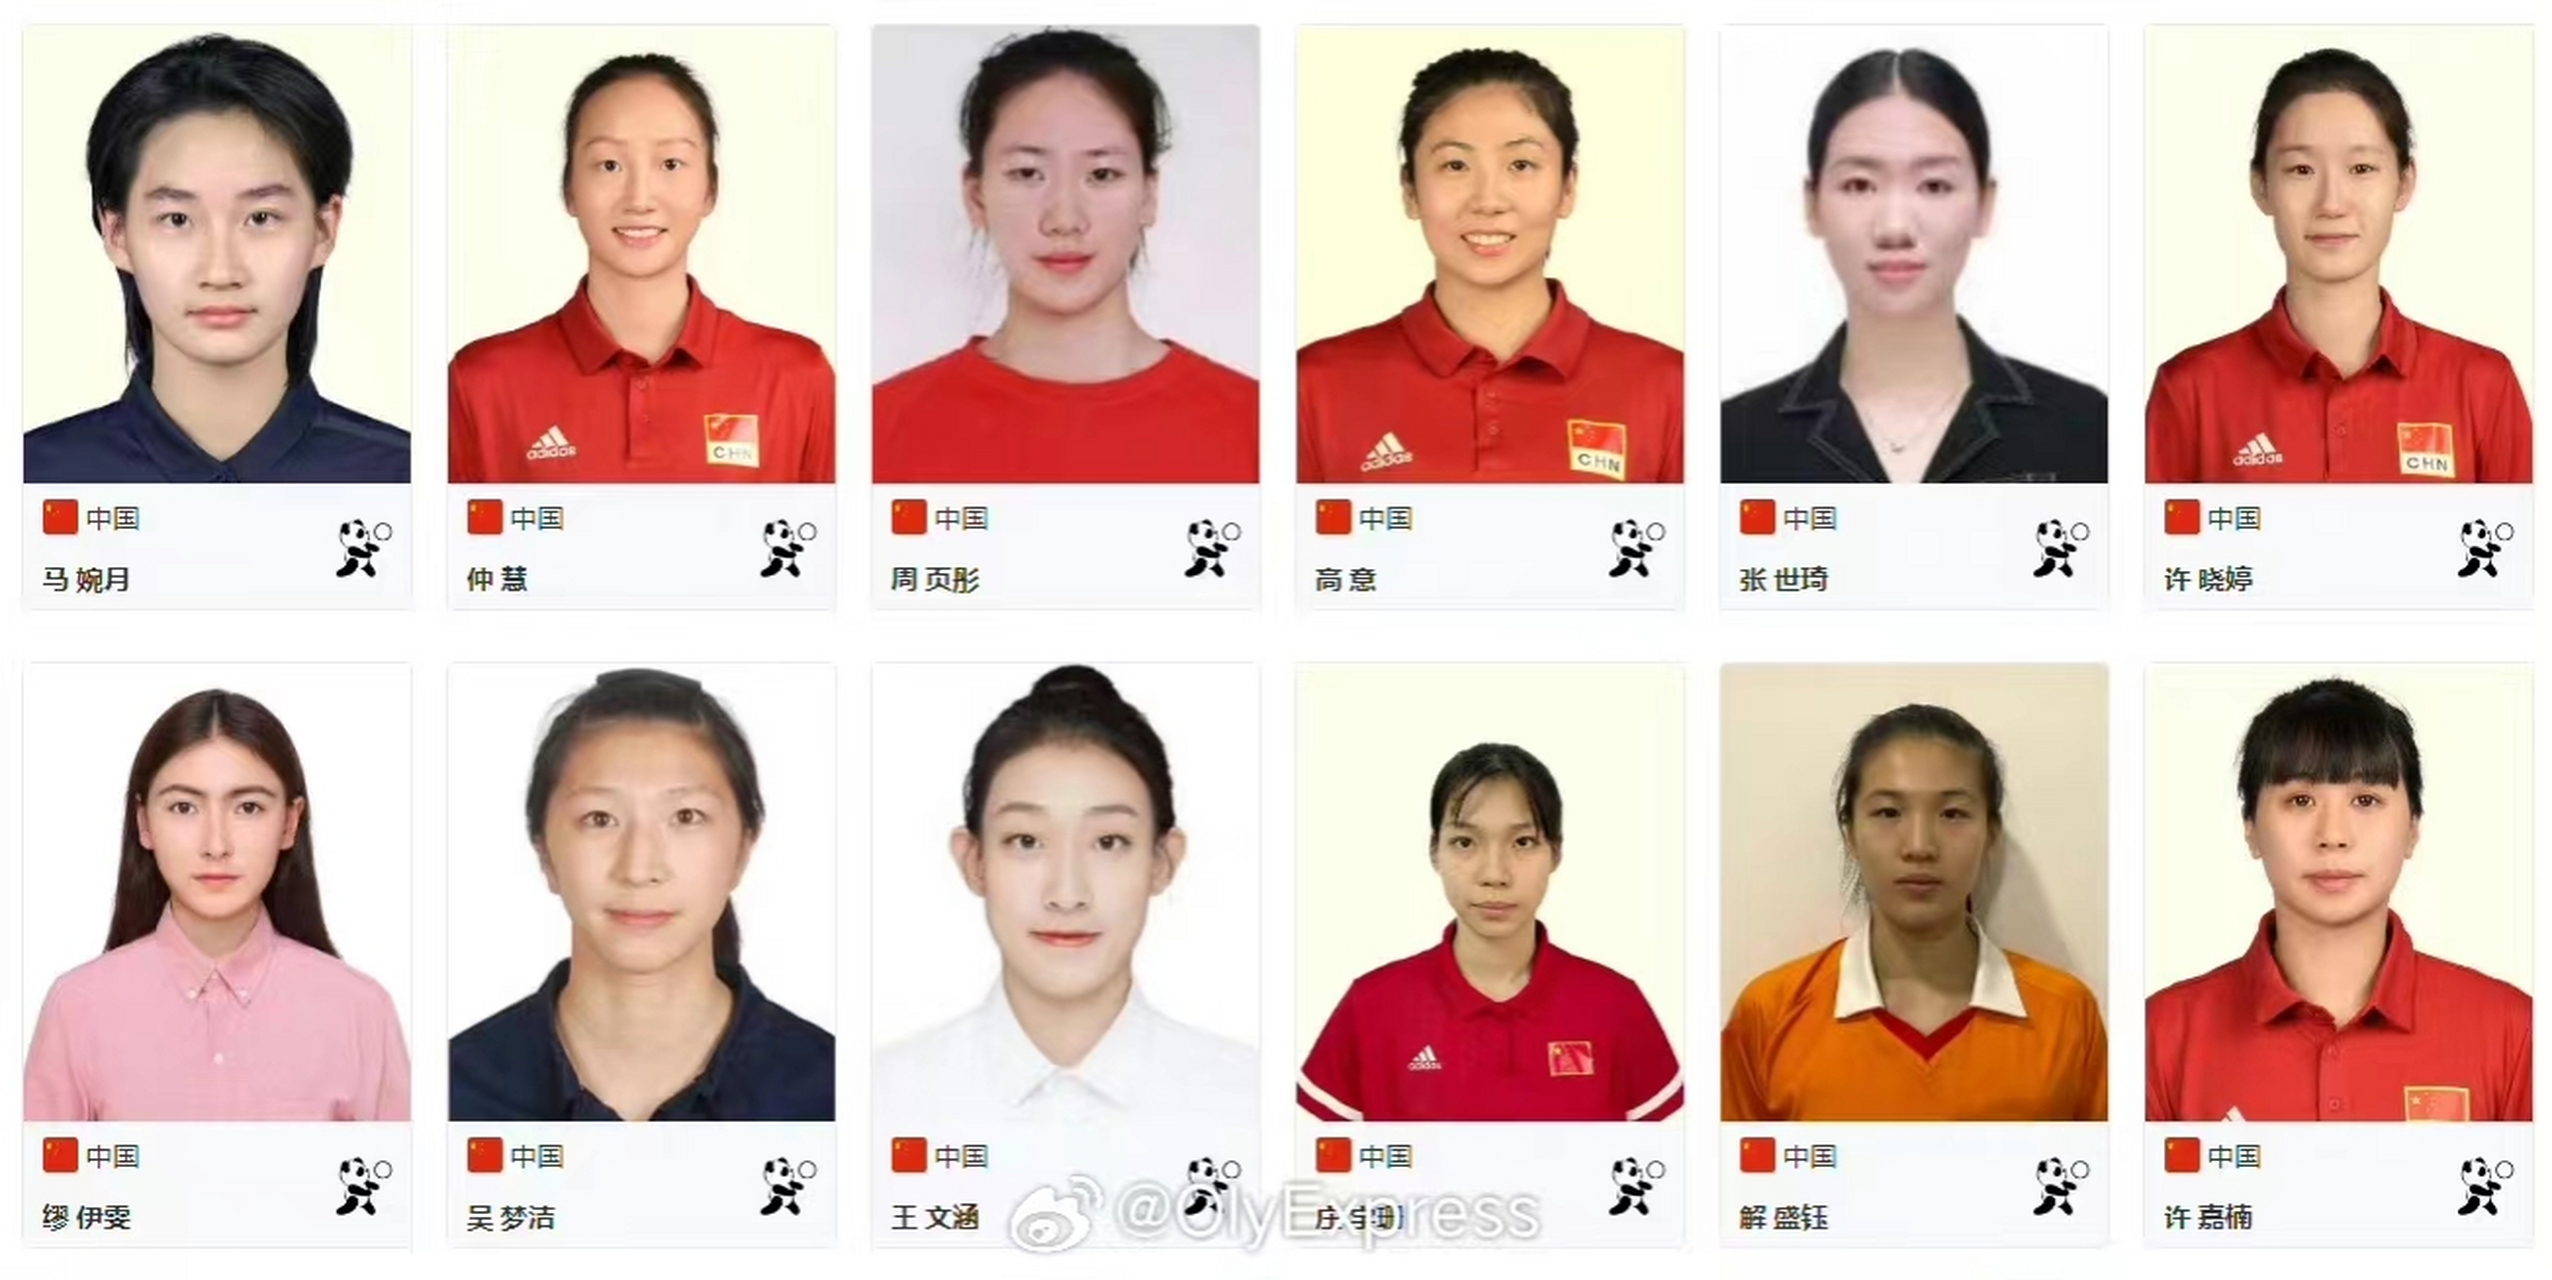 中国女排队员谁最漂亮图片